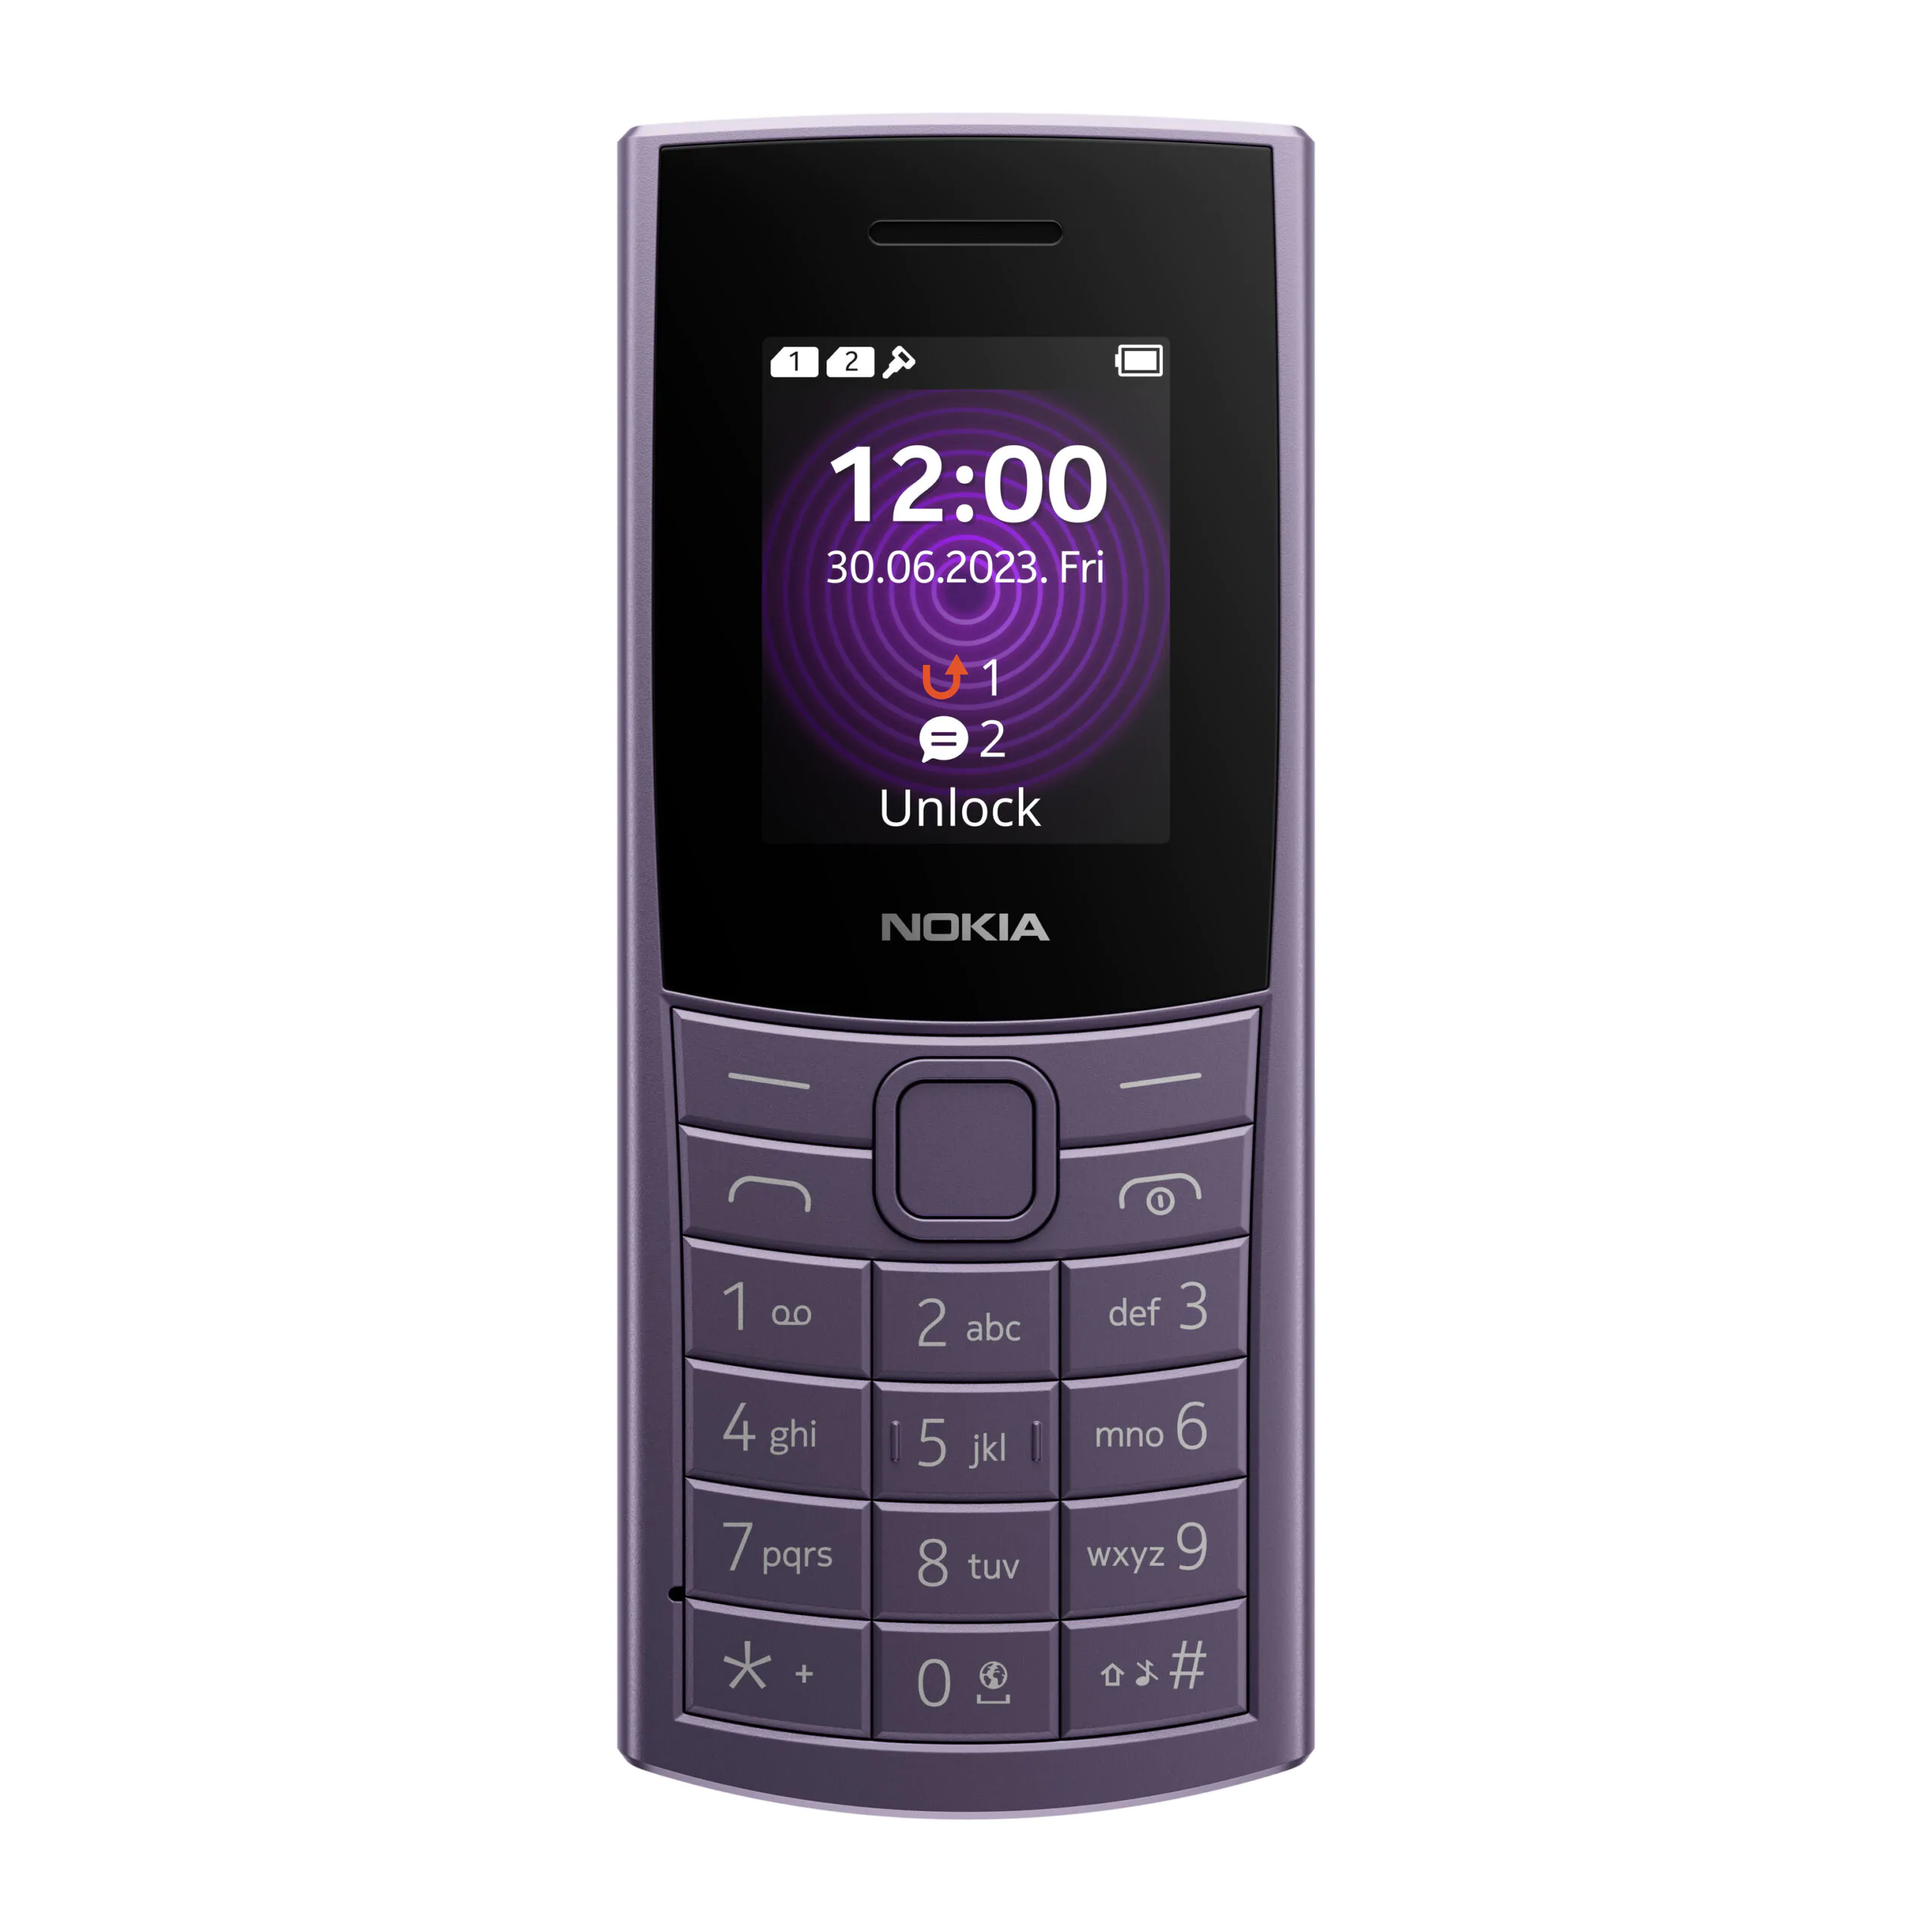 Nokia 110 4G 2 scaled | Nokia 105 4G | โนเกียส่งฟีเจอร์โฟน 2 รุ่นใหม่ Nokia 110 4G และ 105 4G ตอบรับมือถือปุ่มกดยังมีดีมานด์